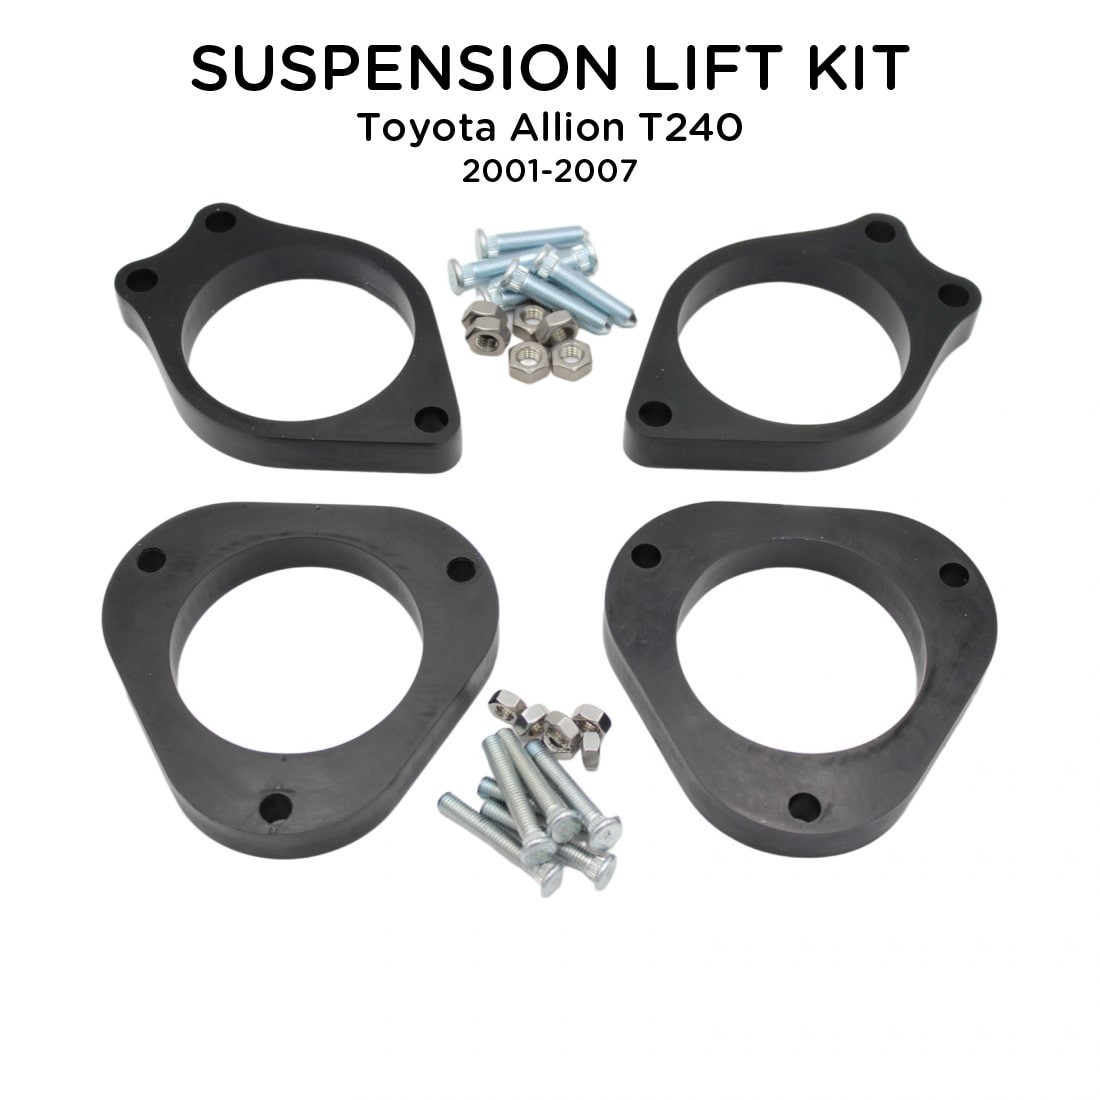 Suspension Lift Kit For Toyota Allion T240 2001-2007